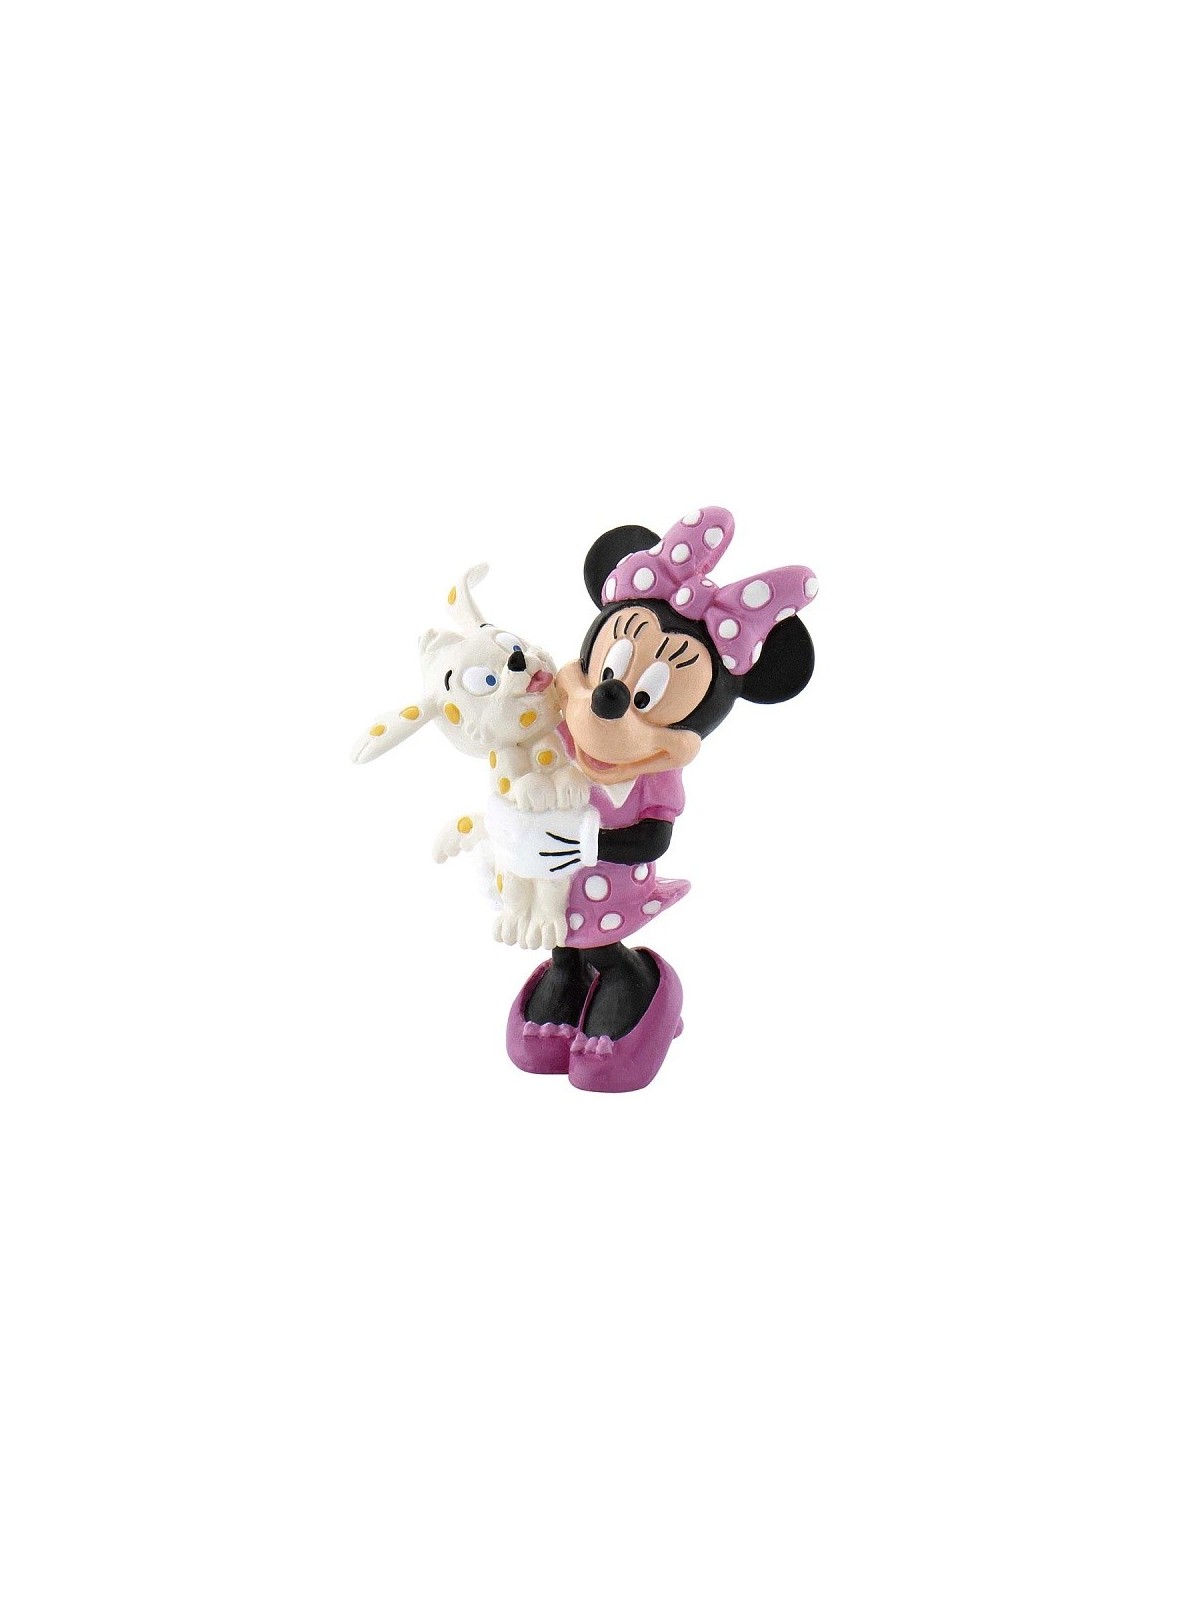  Disney Figure Minnie with a dog